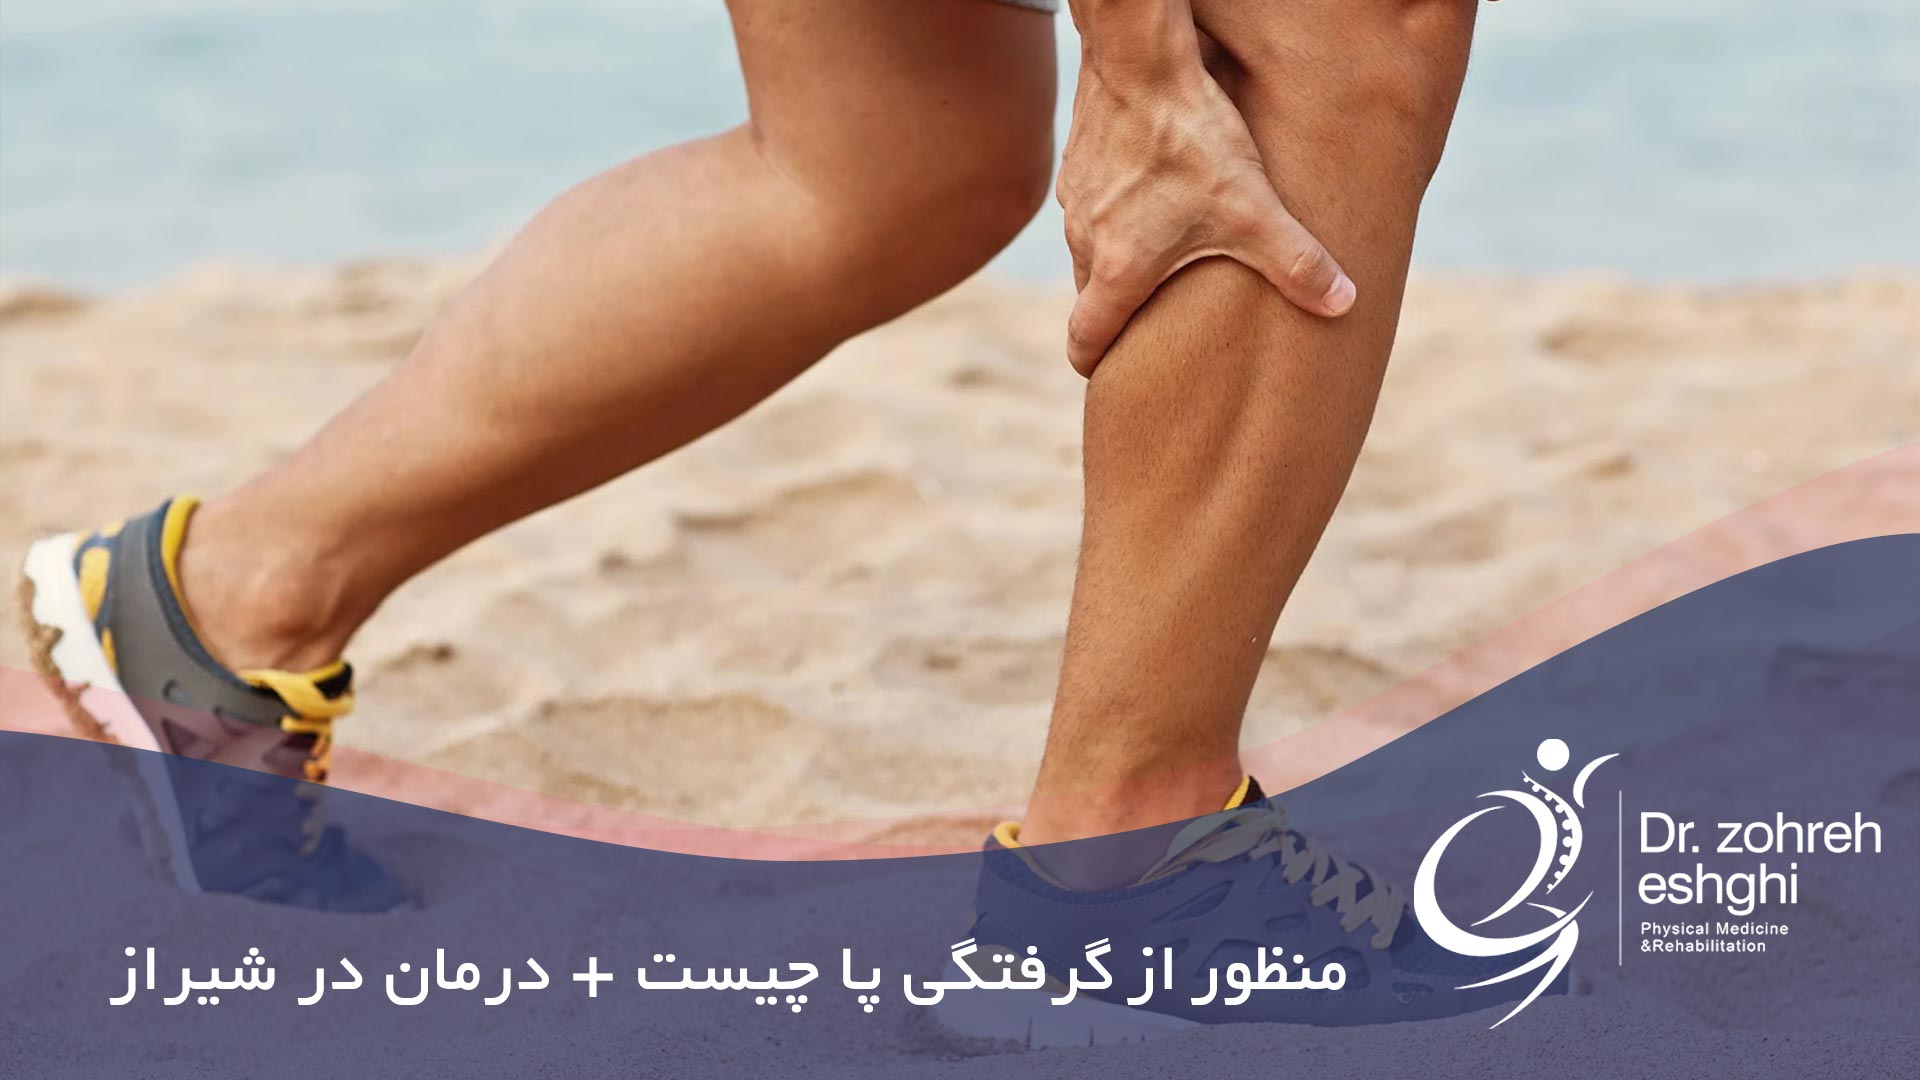 منظور از گرفتگی پا چیست؟ درمان در شیراز